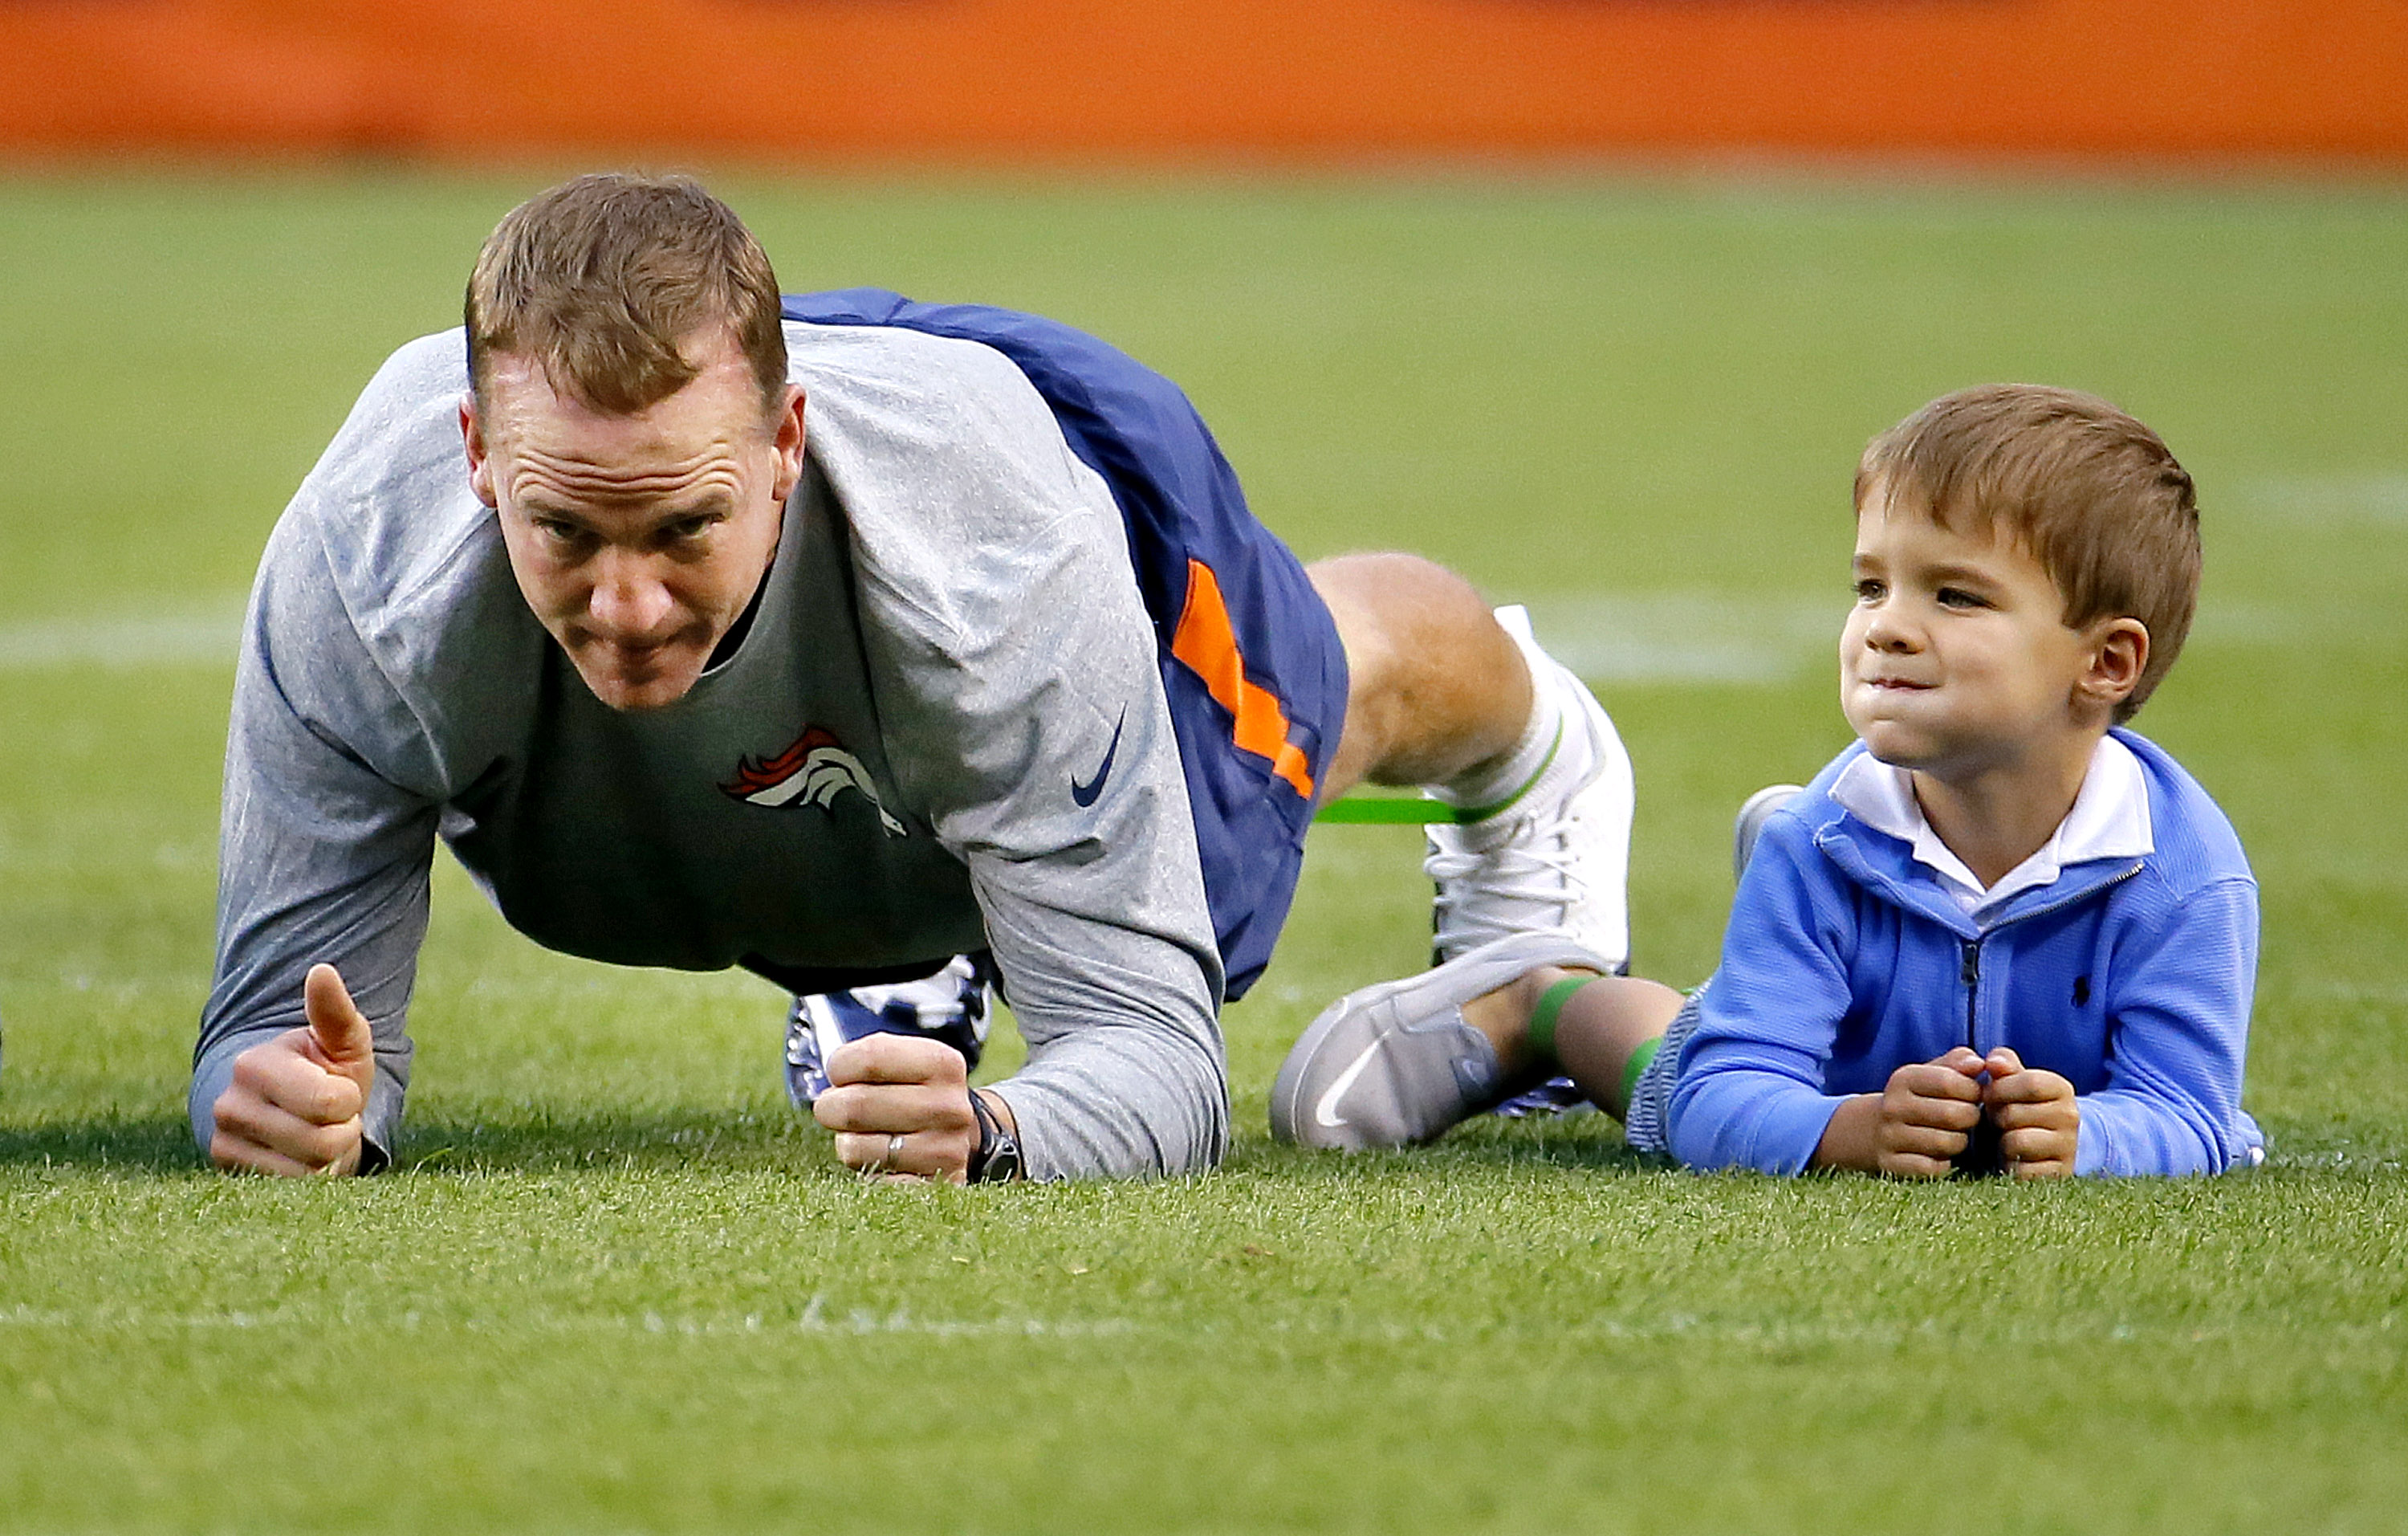 Photos: Peyton Manning’s 4-year-old son joins pregame workout